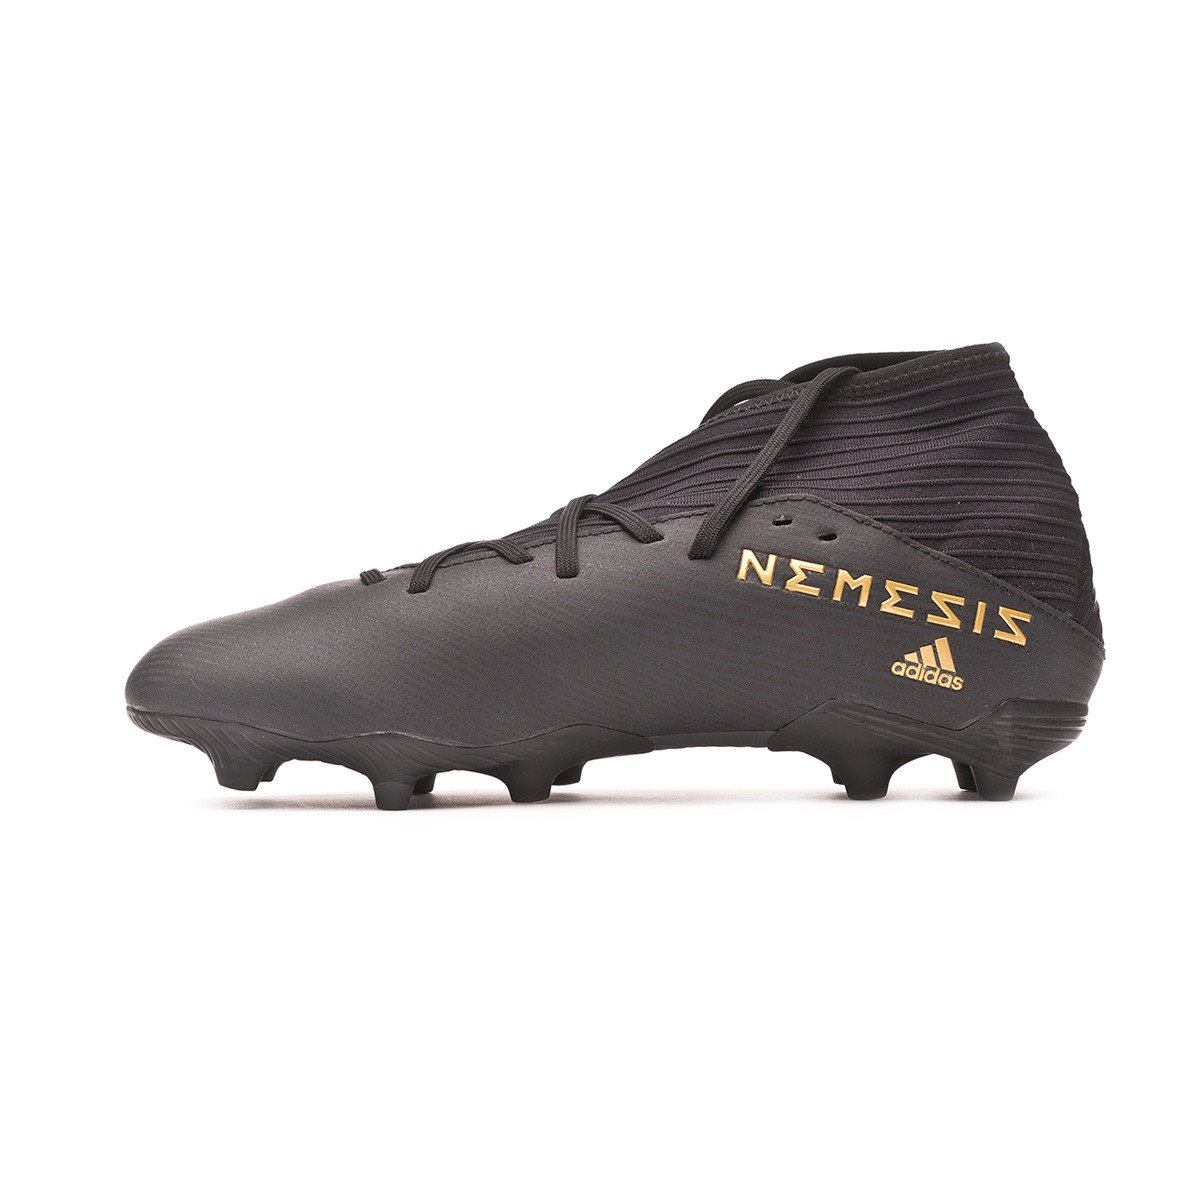 adidas nemeziz 19.3 fg football boots